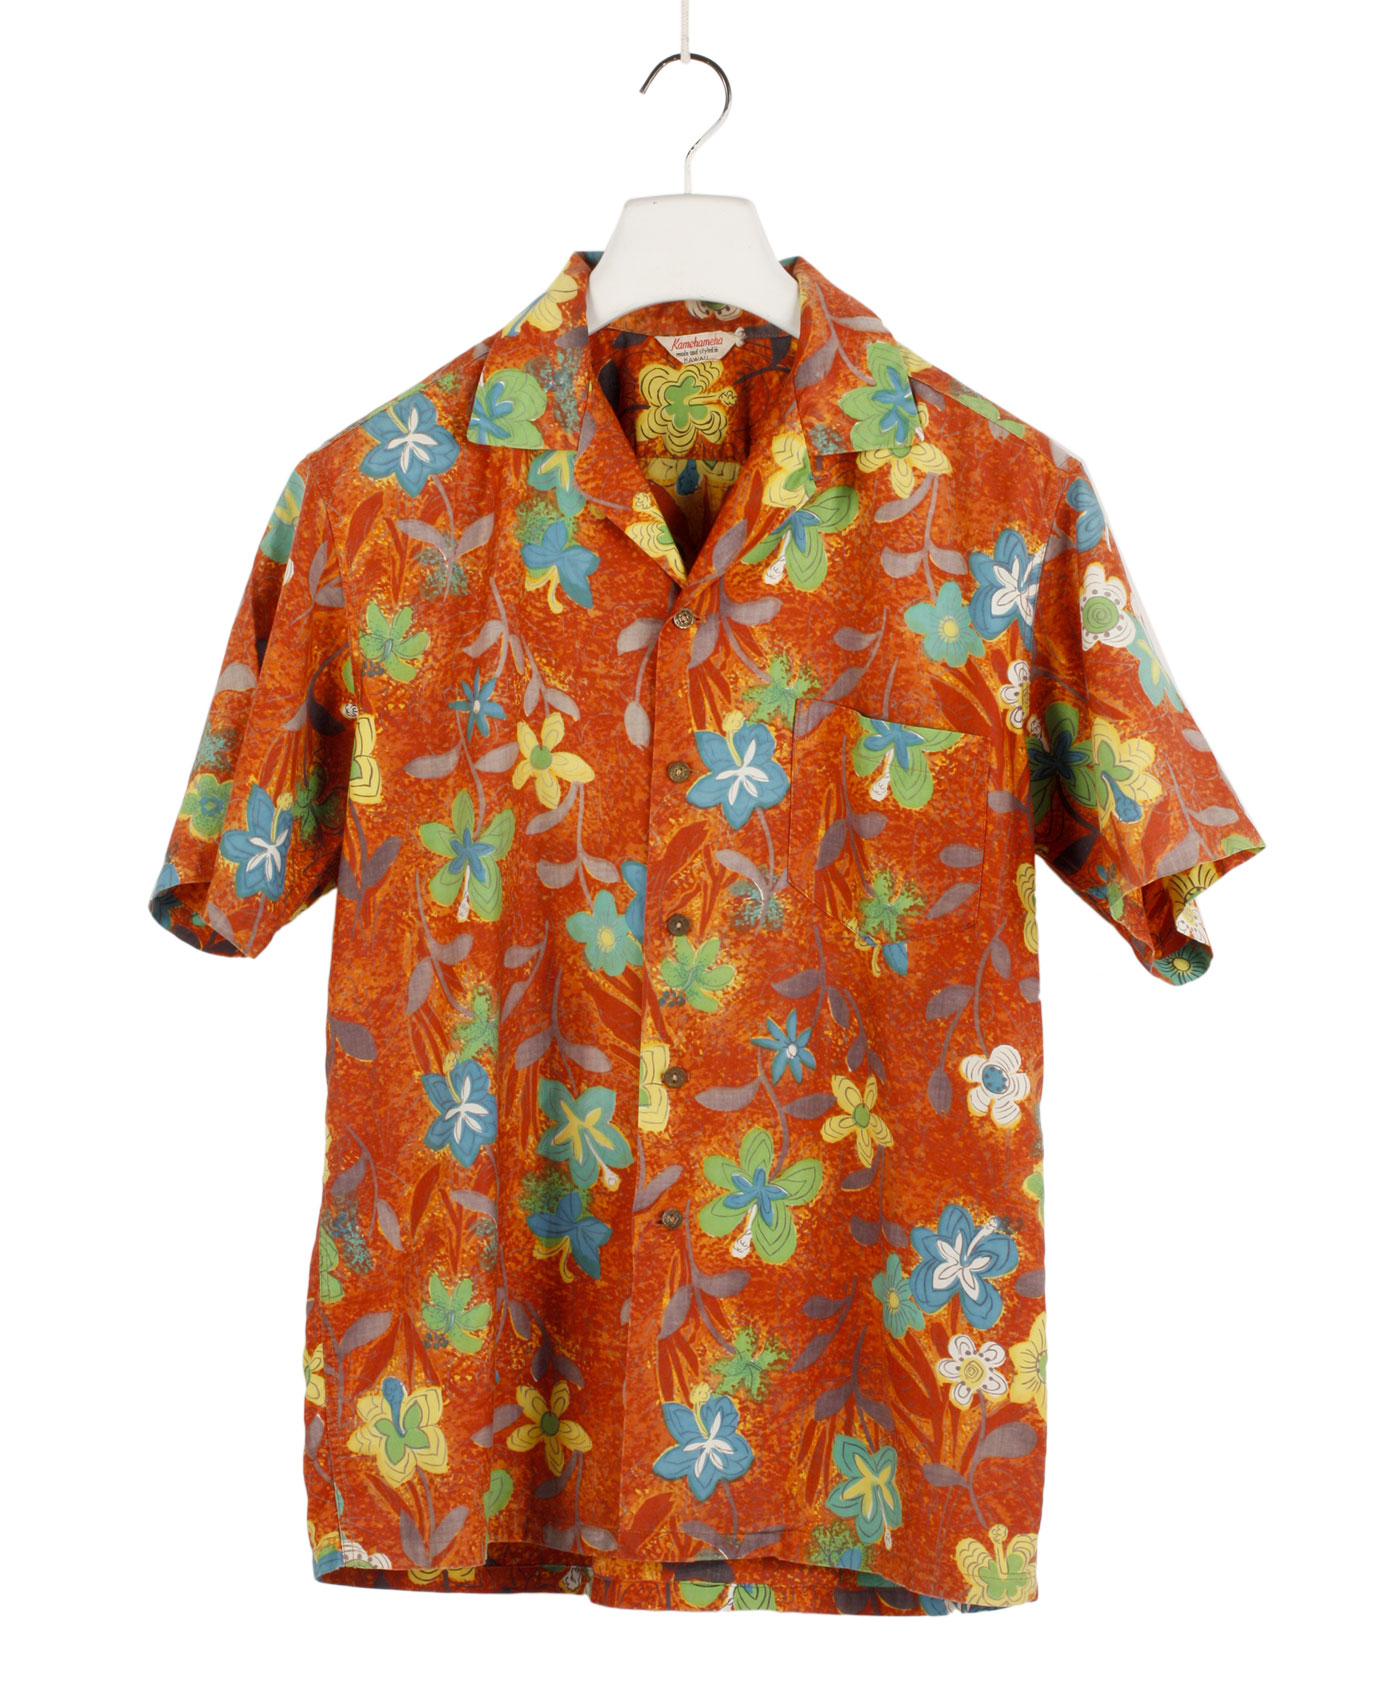 KAMEHAMEHA Hawaiian shirt ‘60s ca.